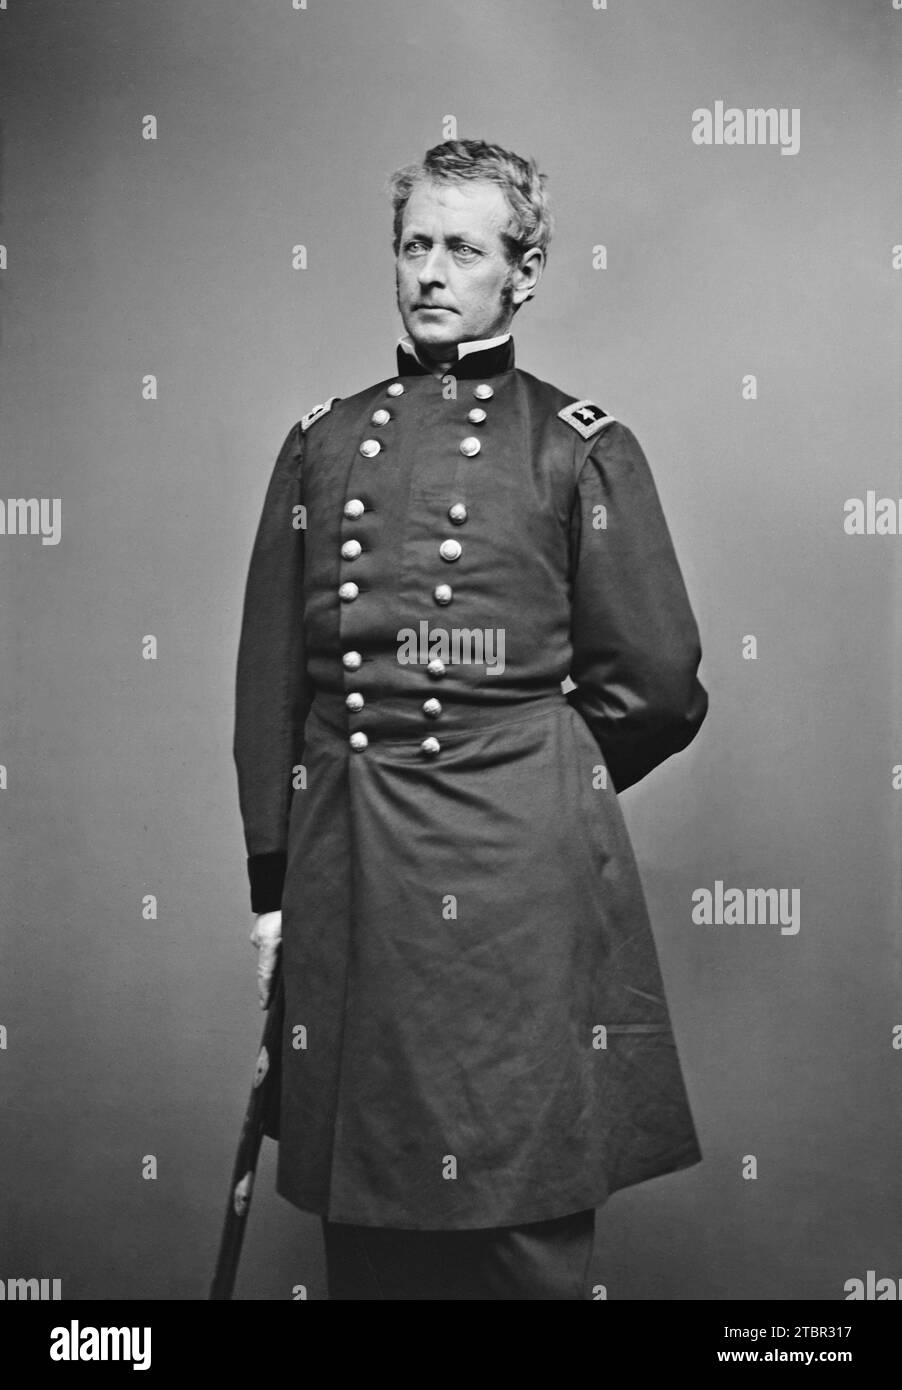 Joseph Hooker. c. 1860-70. By Mathew Brady. Stock Photo